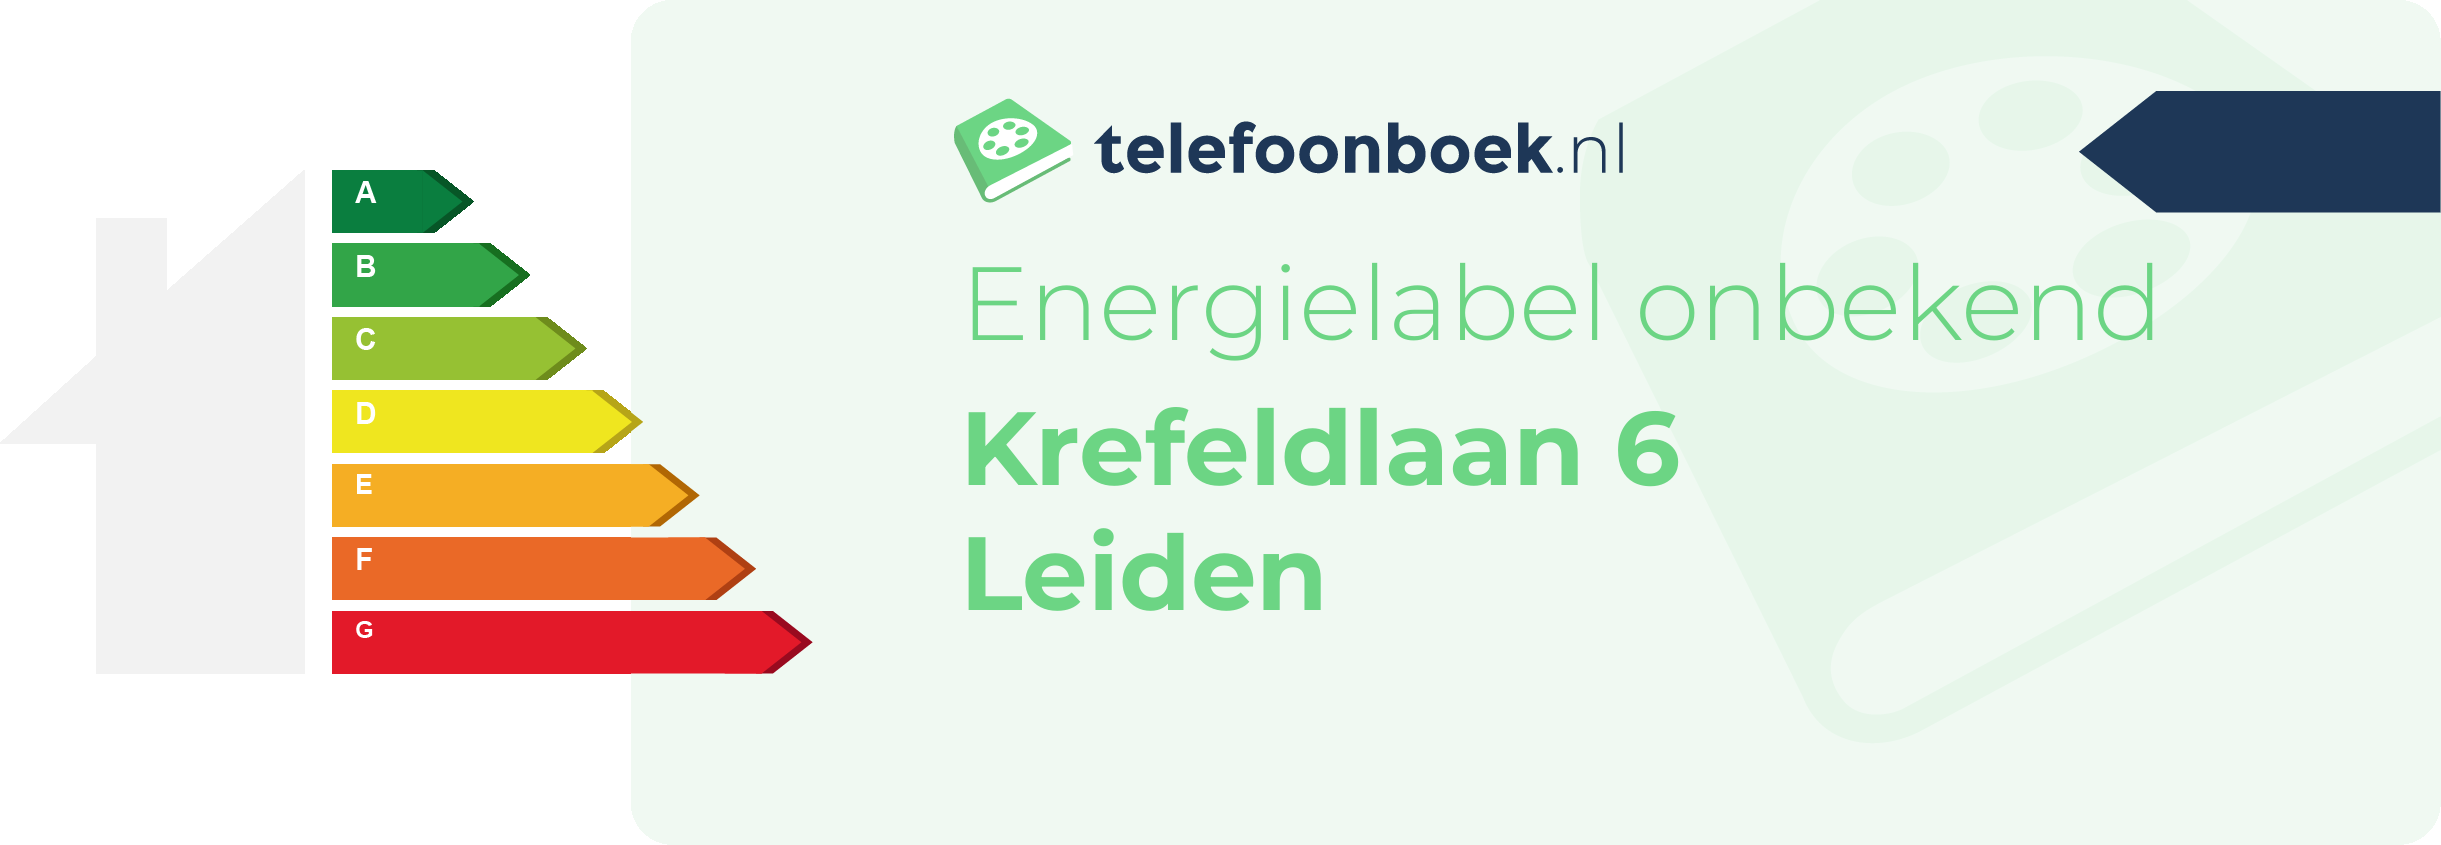 Energielabel Krefeldlaan 6 Leiden